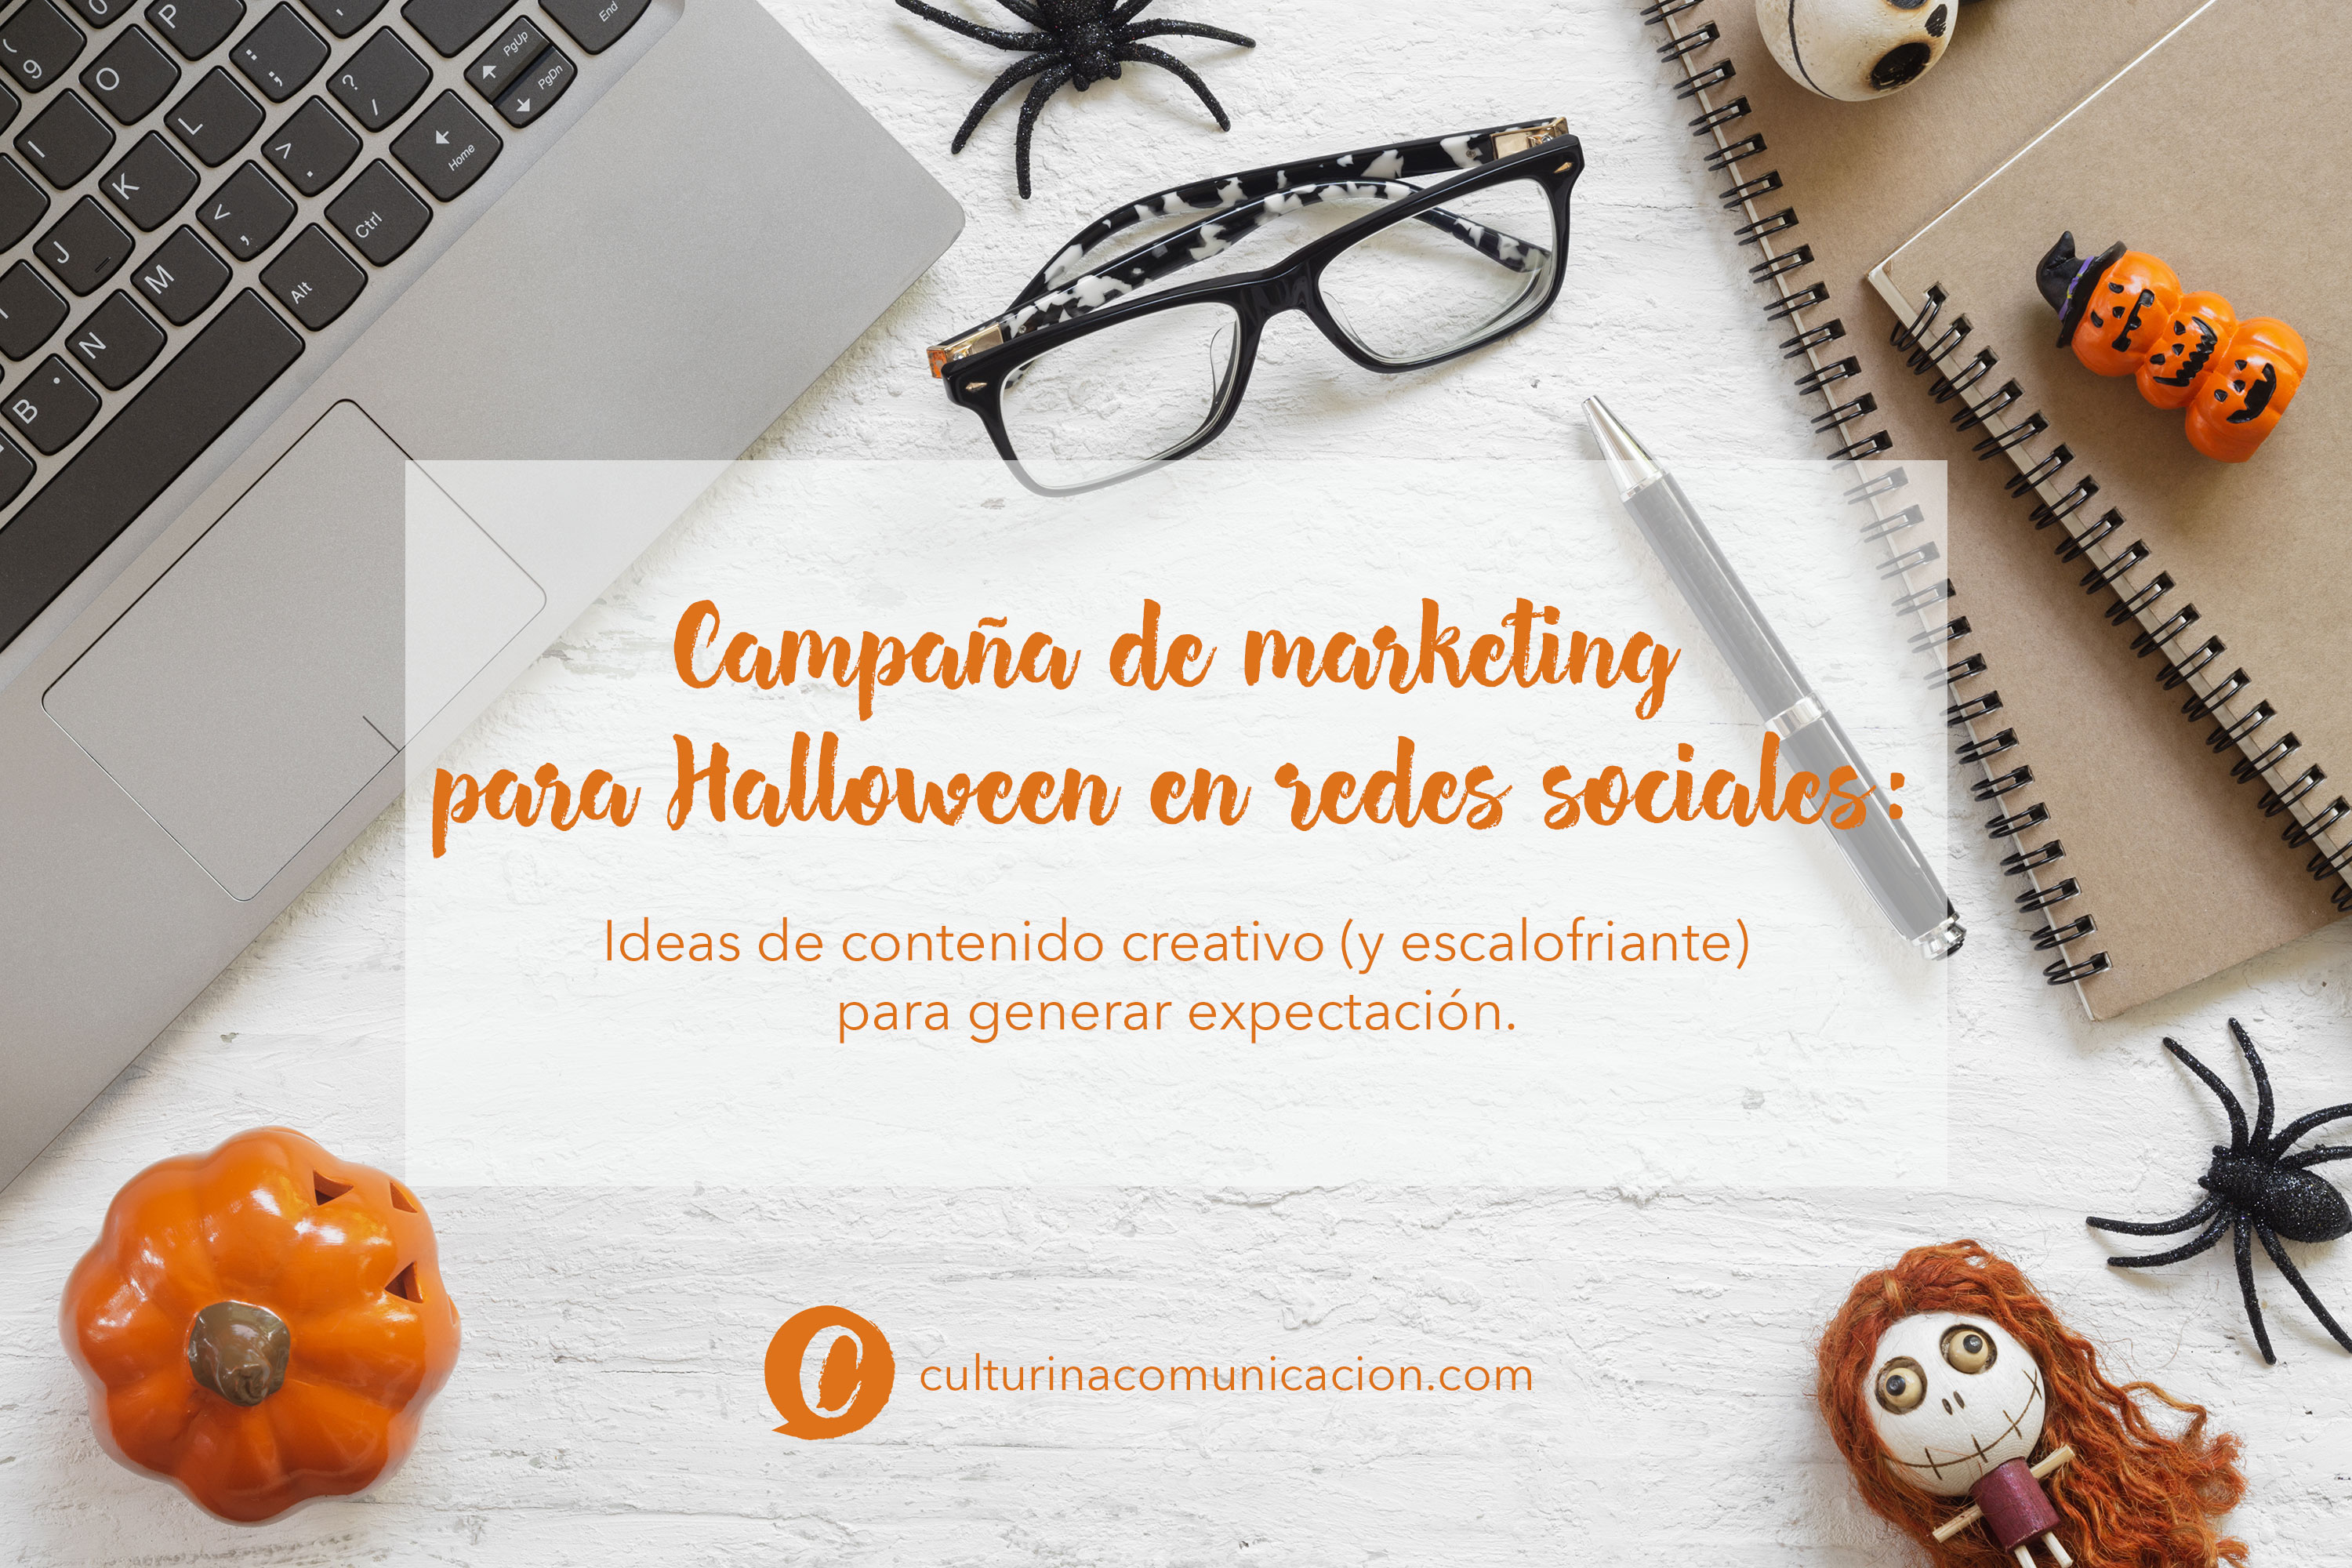 Campaña de marketing para redes sociales en Halloween, culturina comunicación